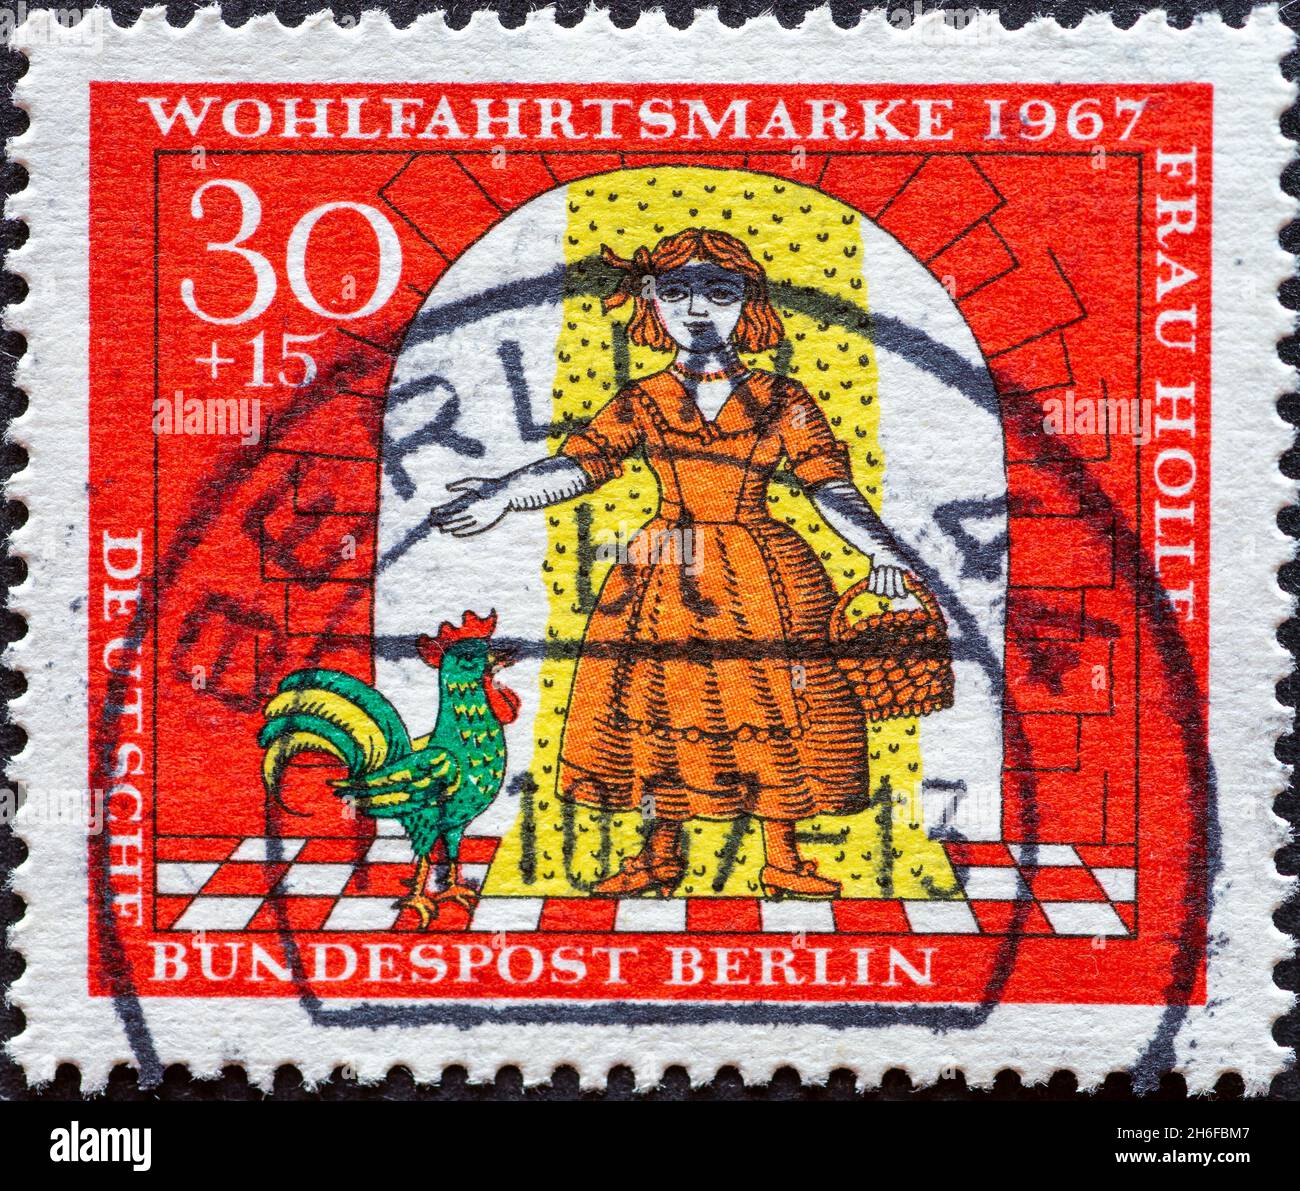 ALLEMAGNE, Berlin - VERS 1967: Timbre-poste d'Allemagne, Berlin montrant une photo du conte de fées des Frères Grimm: Frau Holle.Marie dorée Banque D'Images